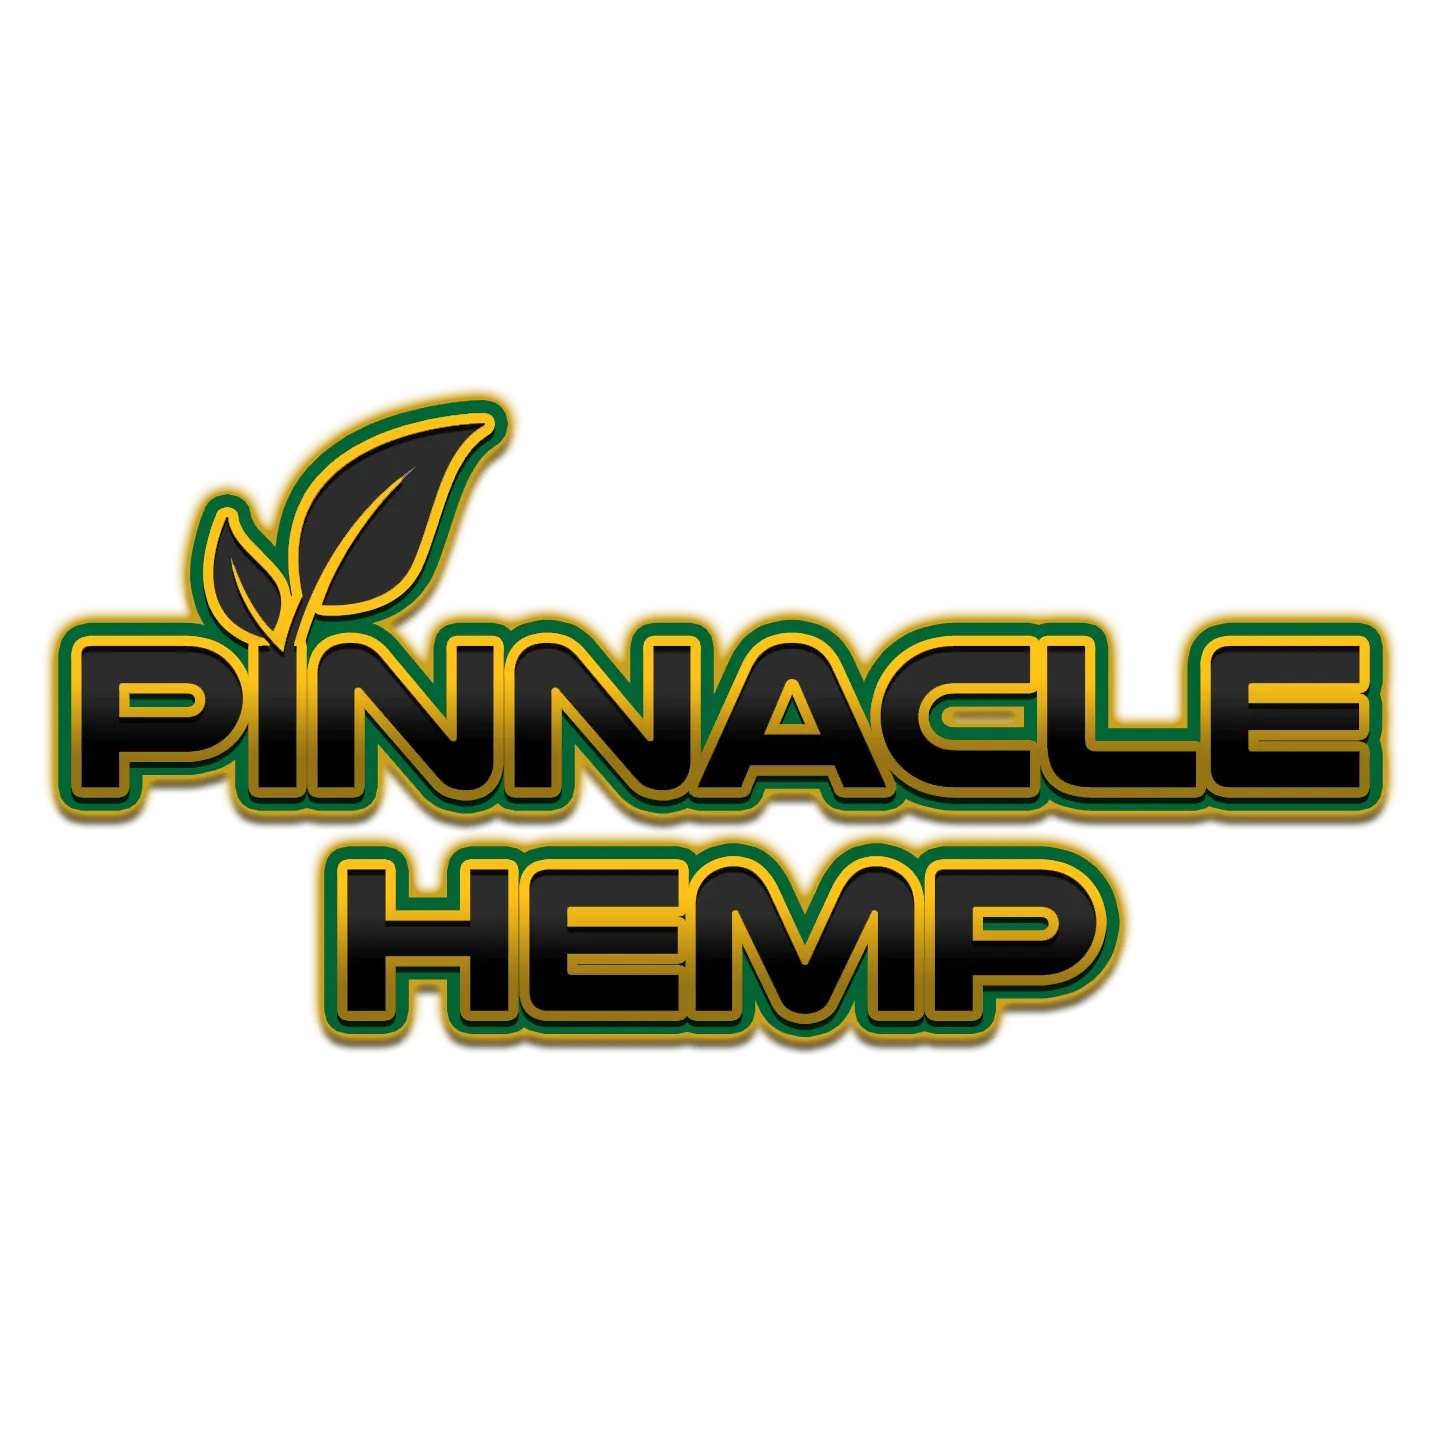 Pinnacle Hemp logo